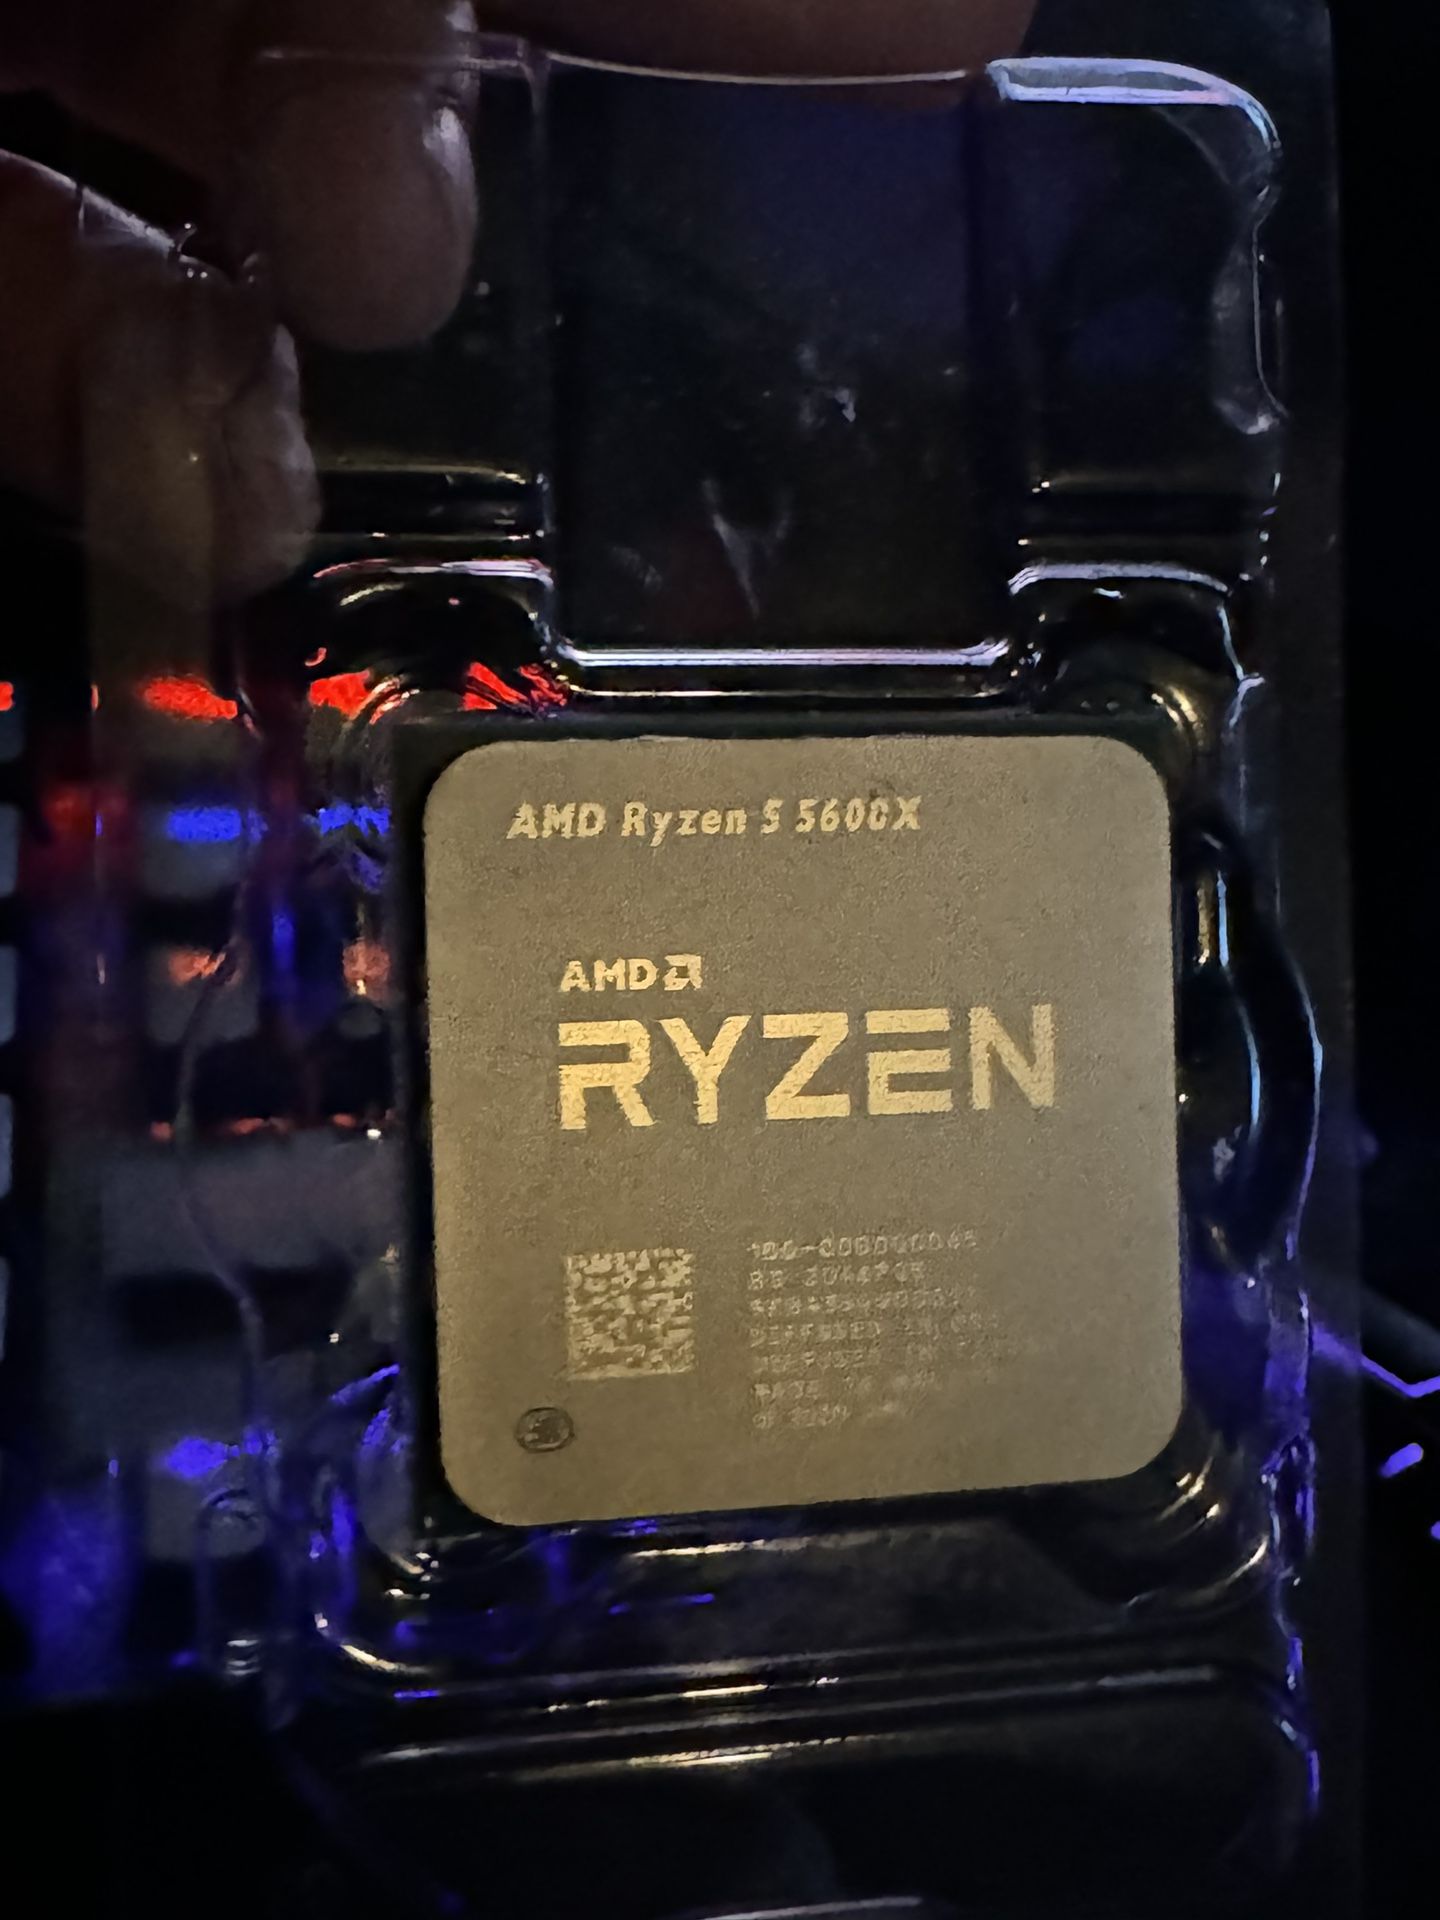 Ryzen 5 5600x AMD CPU